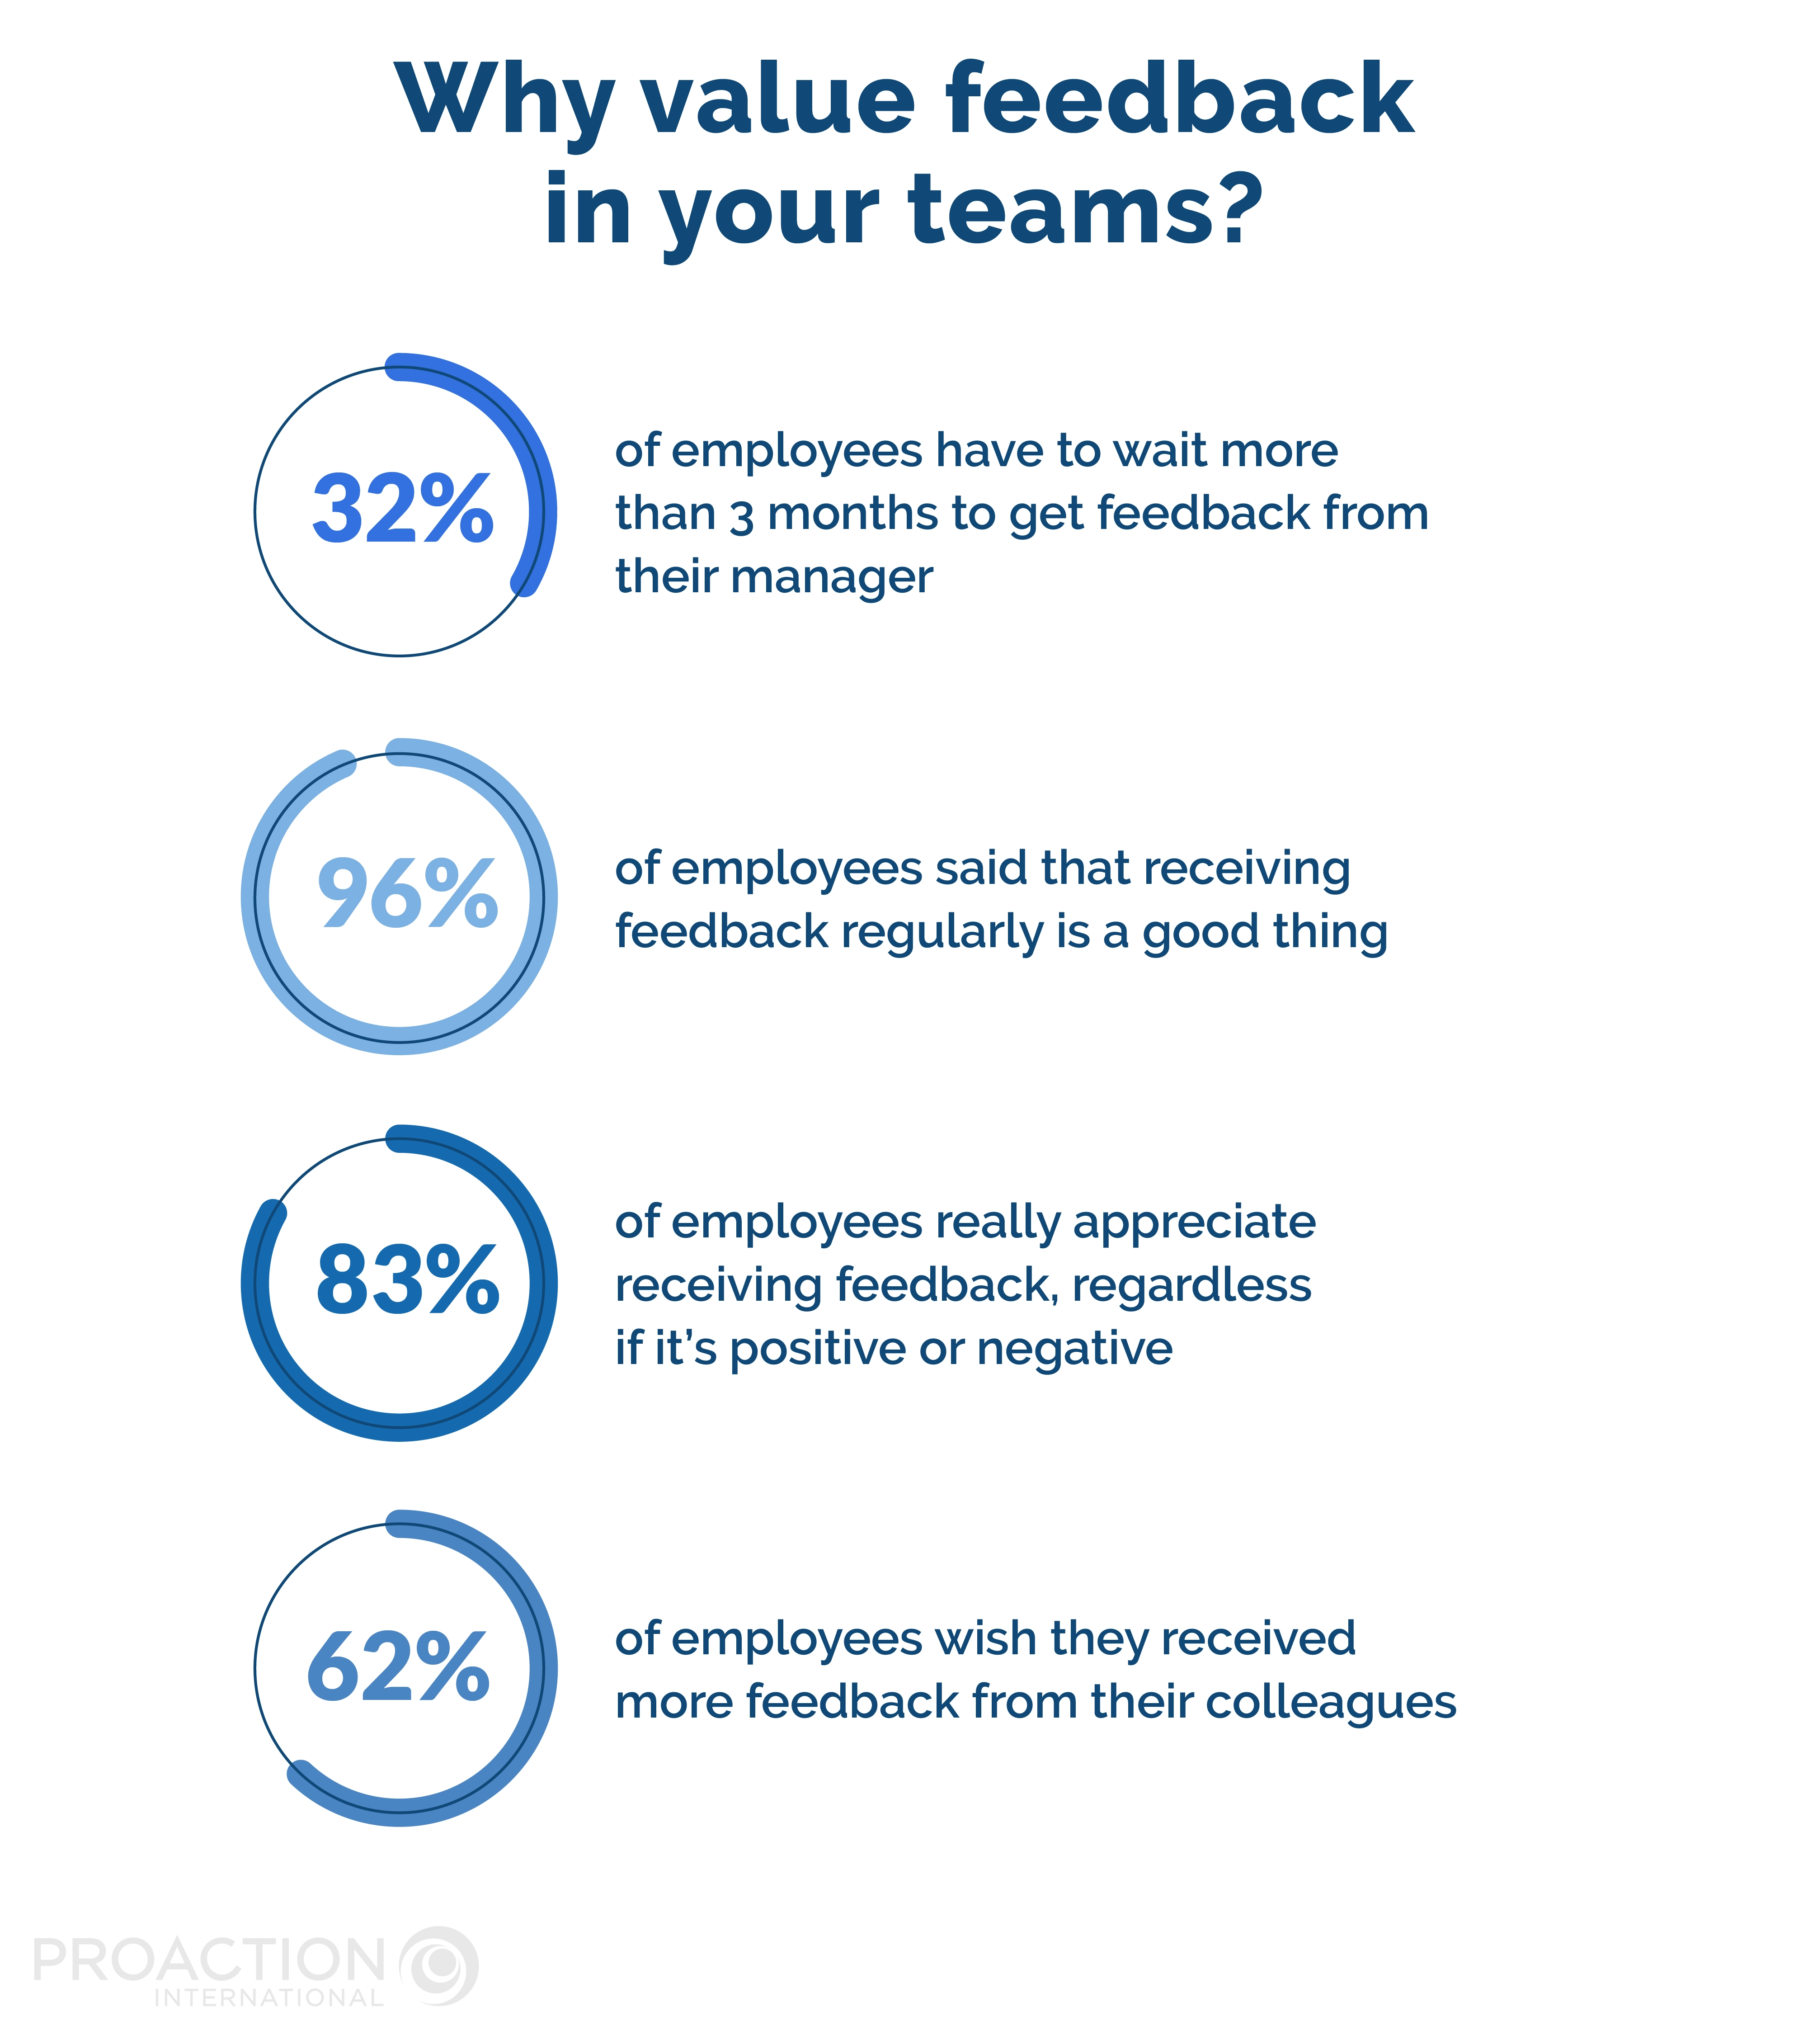 Value feedback in your teams